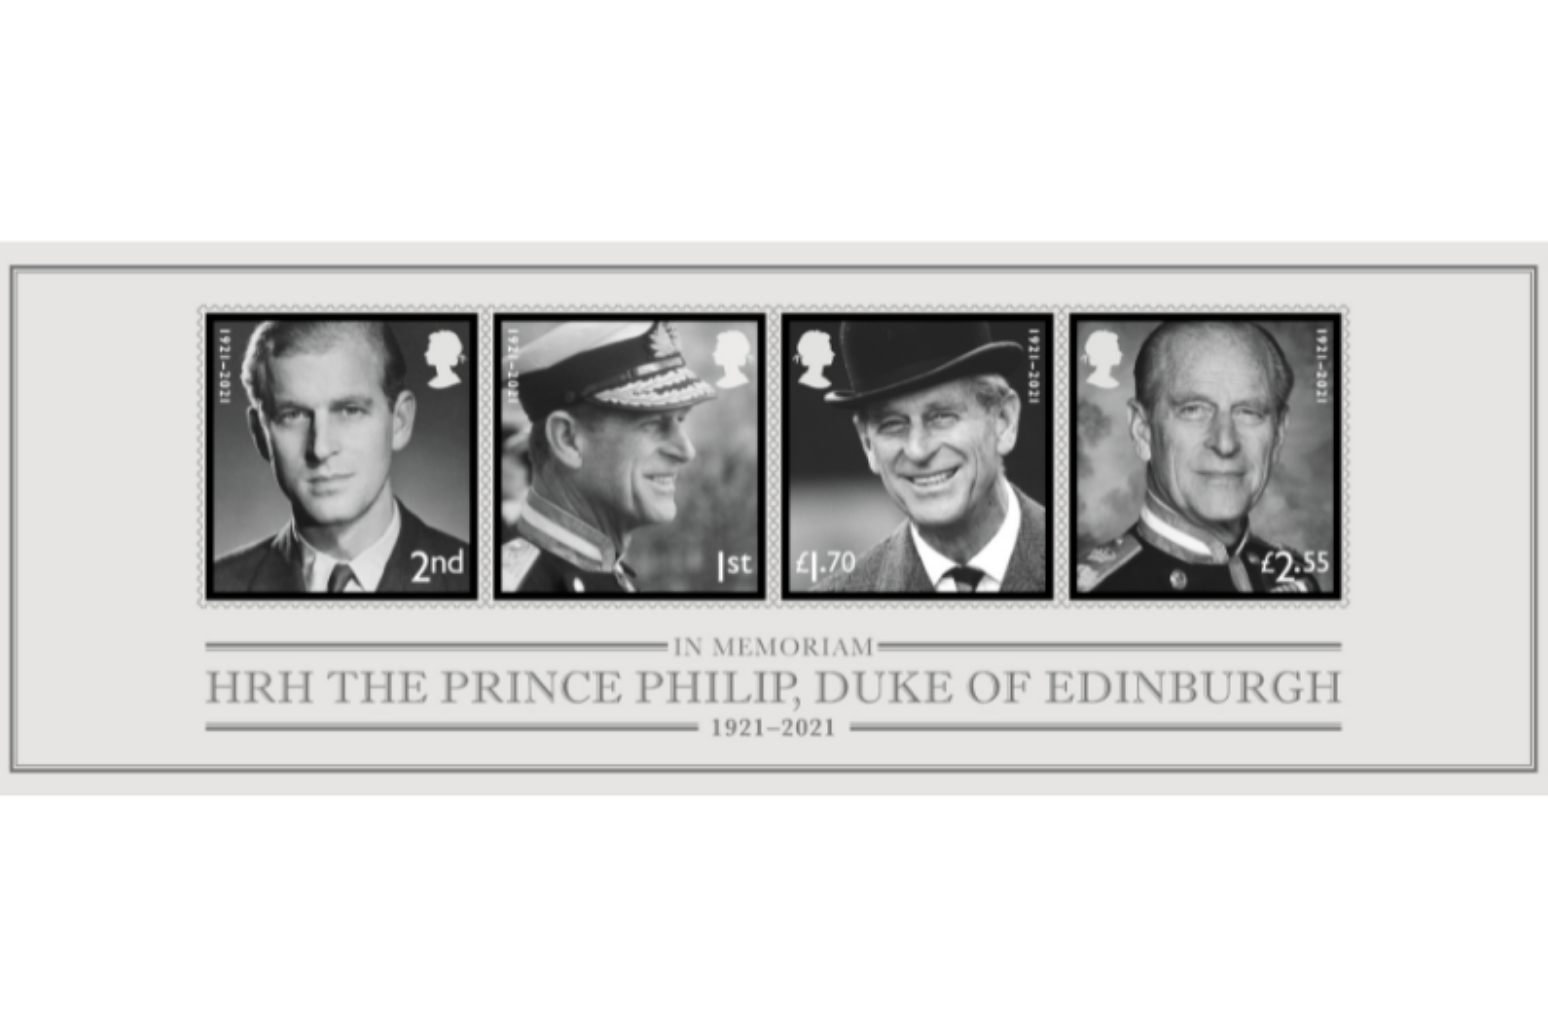 Stamps issued in memory of Duke of Edinburgh 